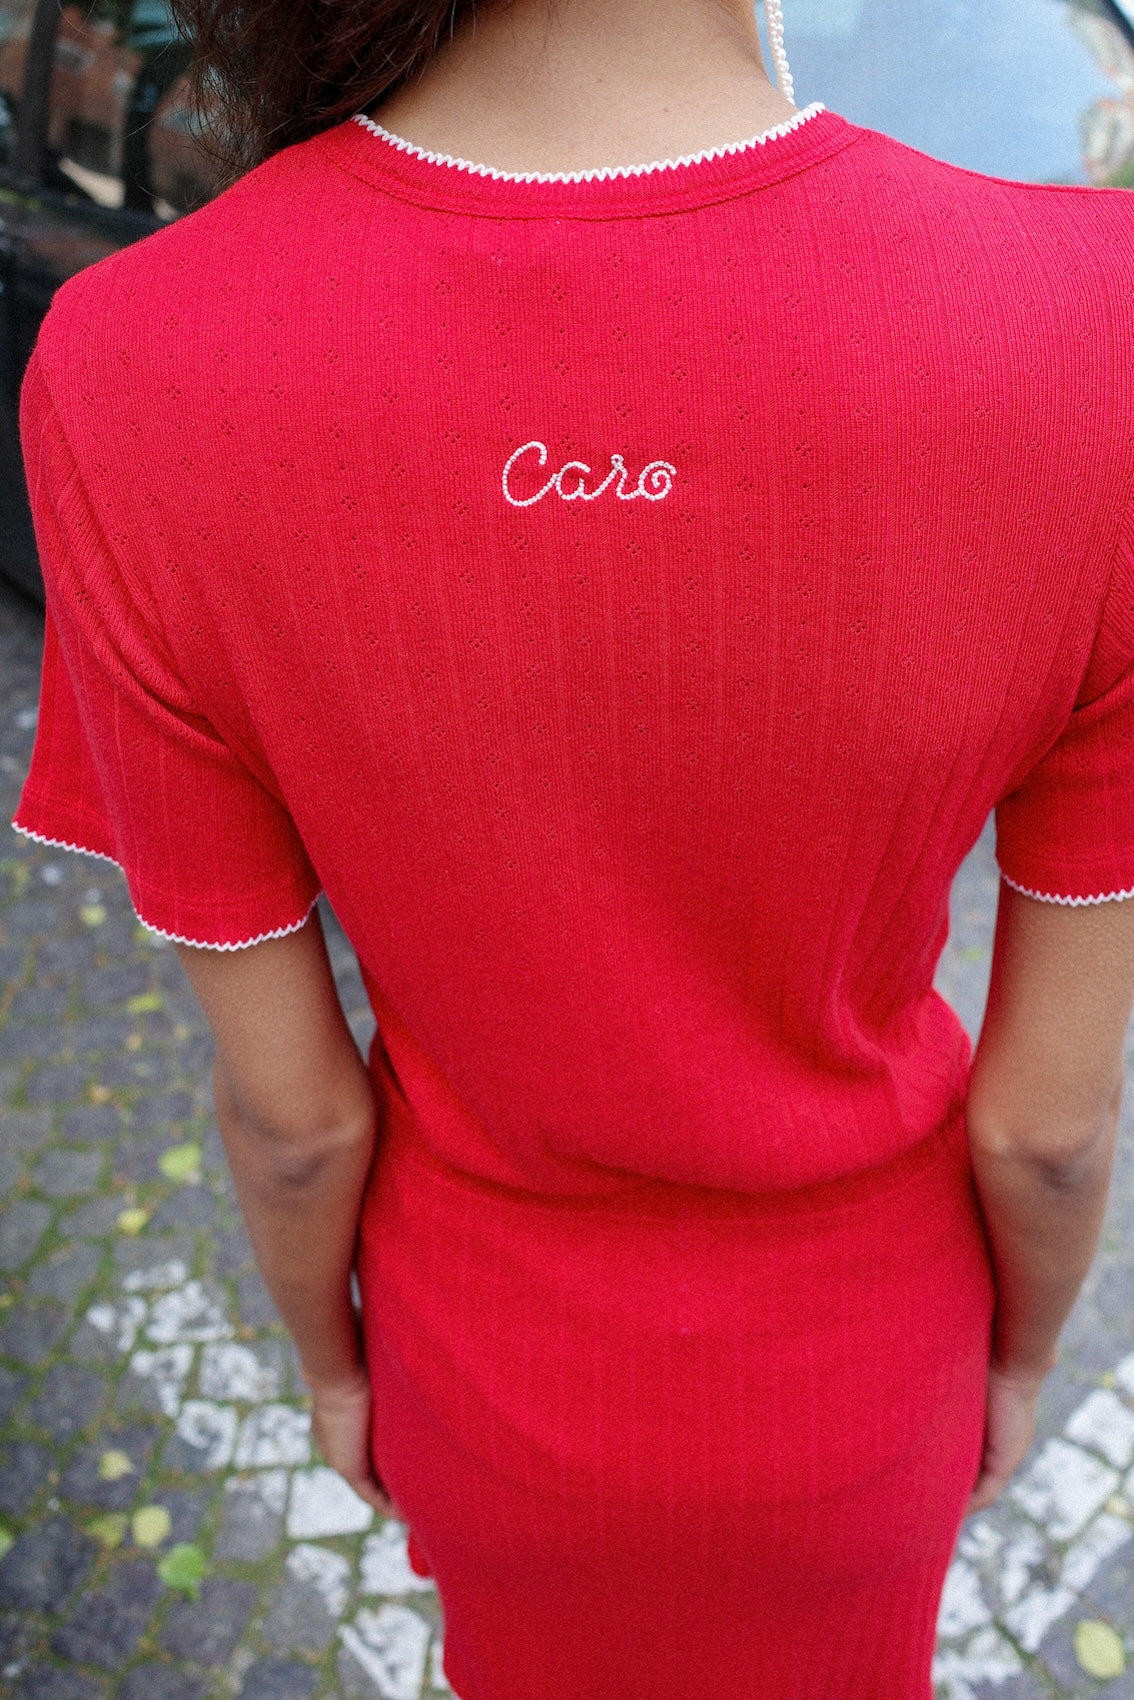 Caro T-shirt - Red